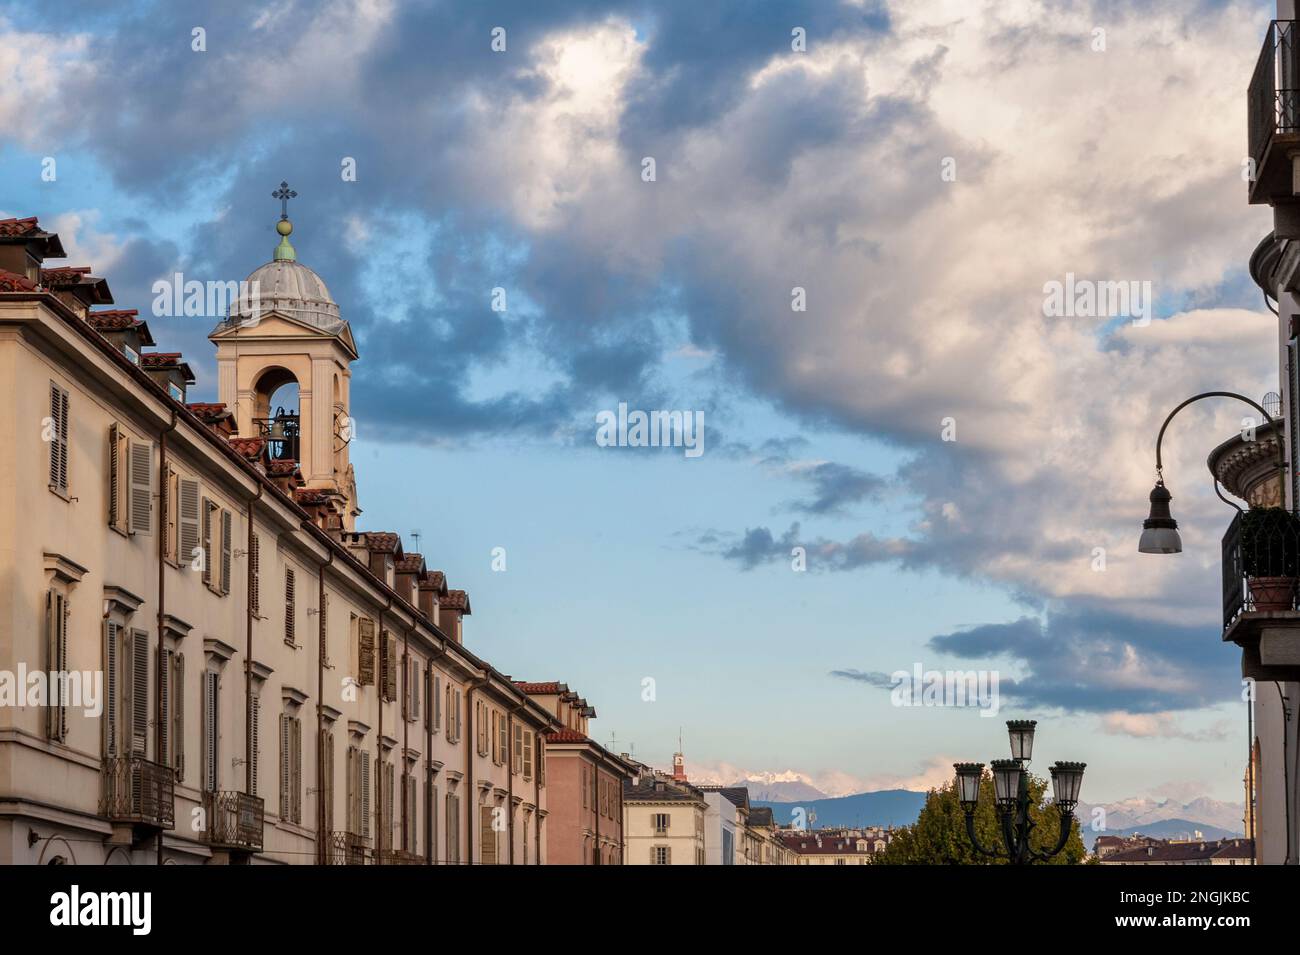 Italia, Torino. Panorama urbano da piazza Gran Madre di Dio, campanile con orologio. Monte dei Cappuccini Foto Stock